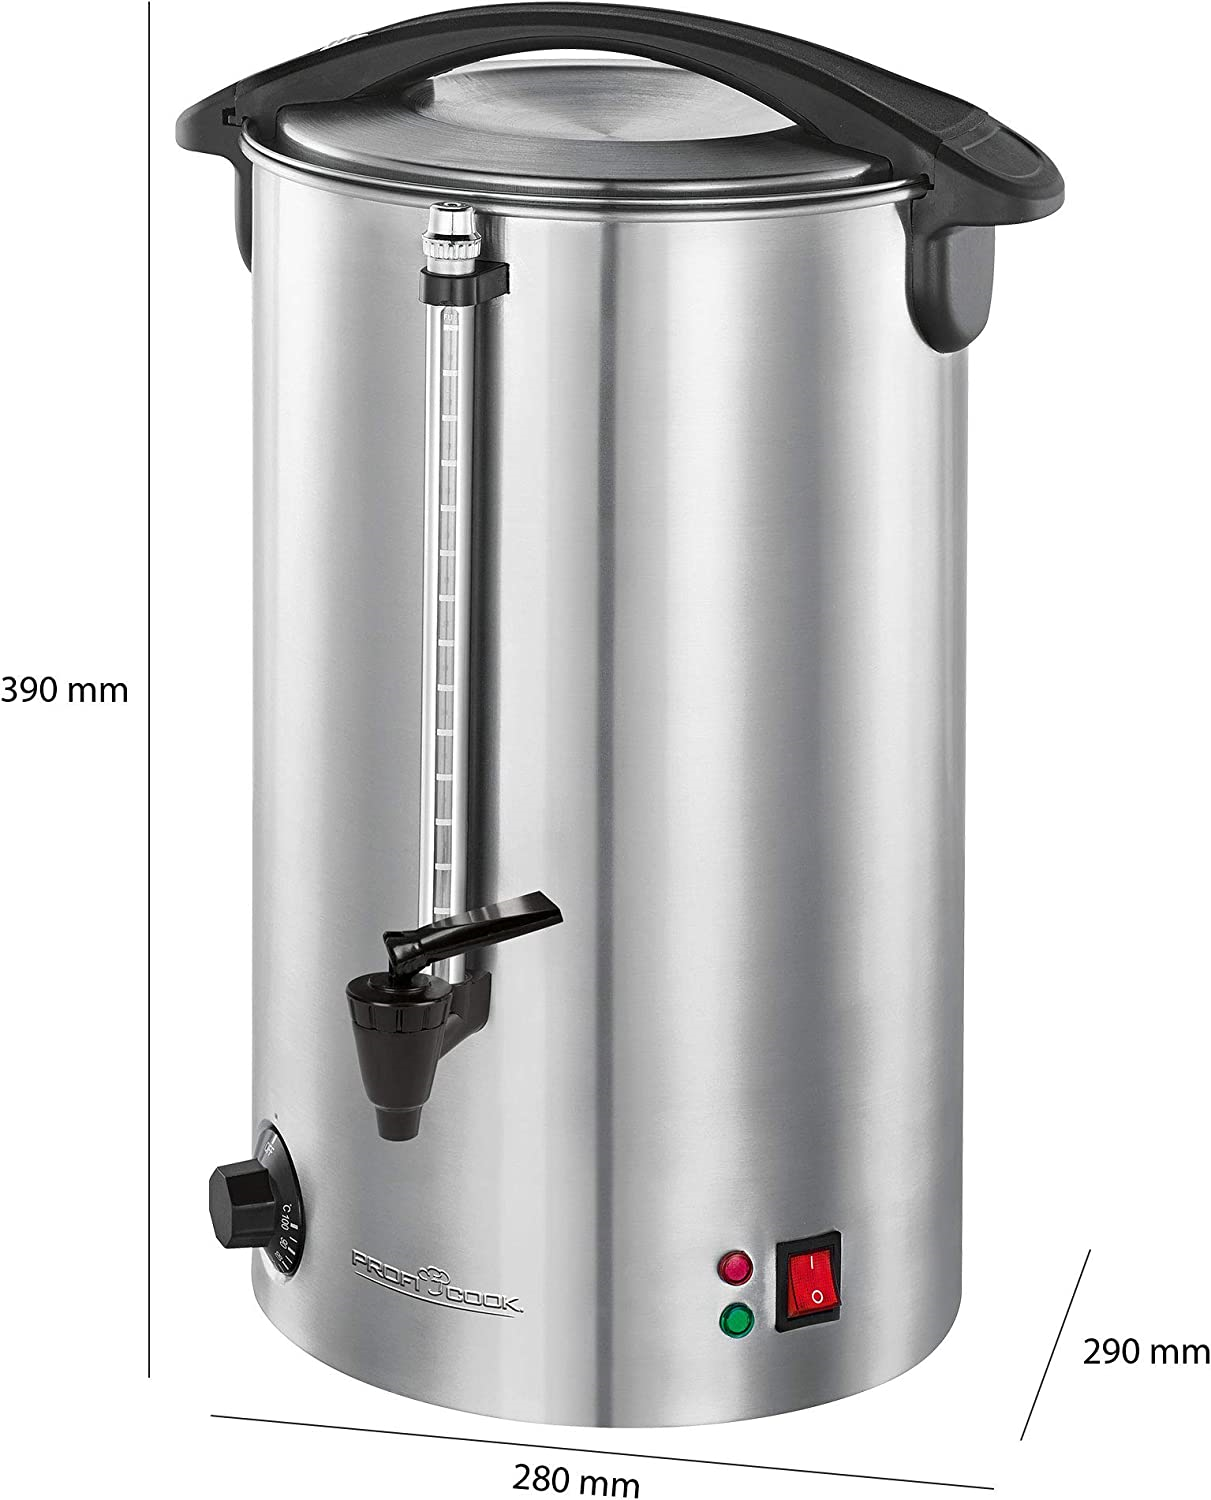 Proficook PC-HGA 1196 Heißgetränkeautomat zum Erhitzen und Warmhalten  von  Glühwein/Kaffee/Tee/Punsch oder Suppen, hochwertige